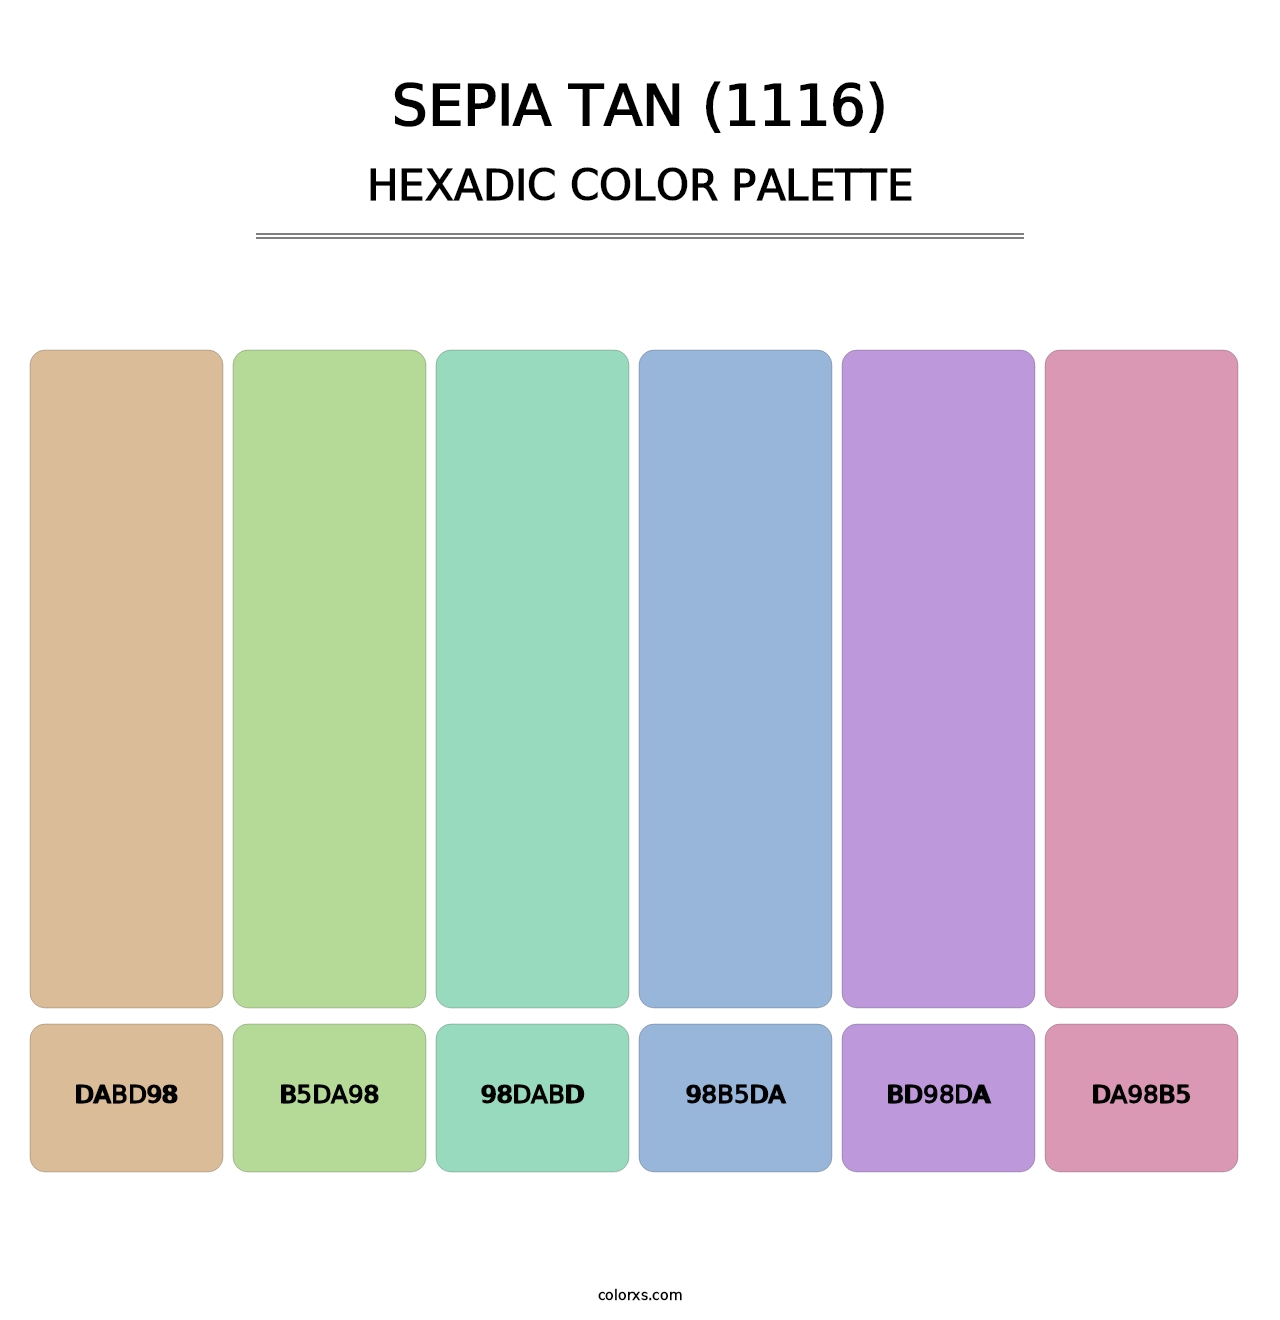 Sepia Tan (1116) - Hexadic Color Palette